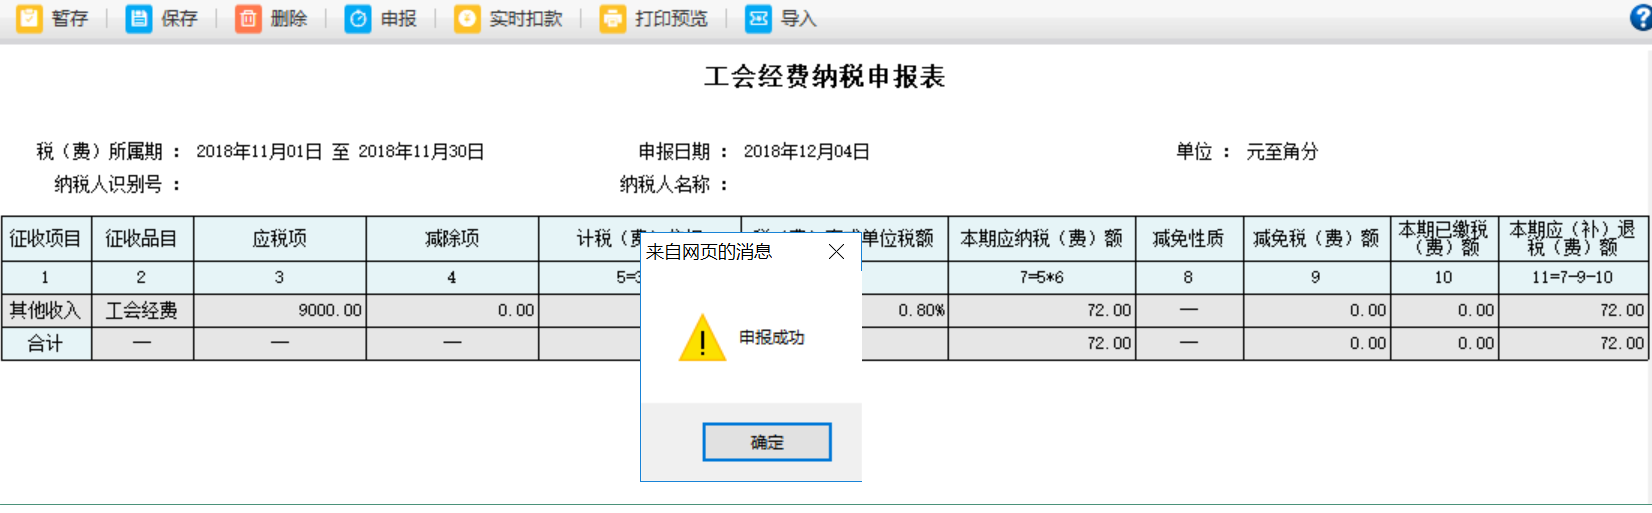 河南省电子税务局工会经费纳税申报表进行扣款